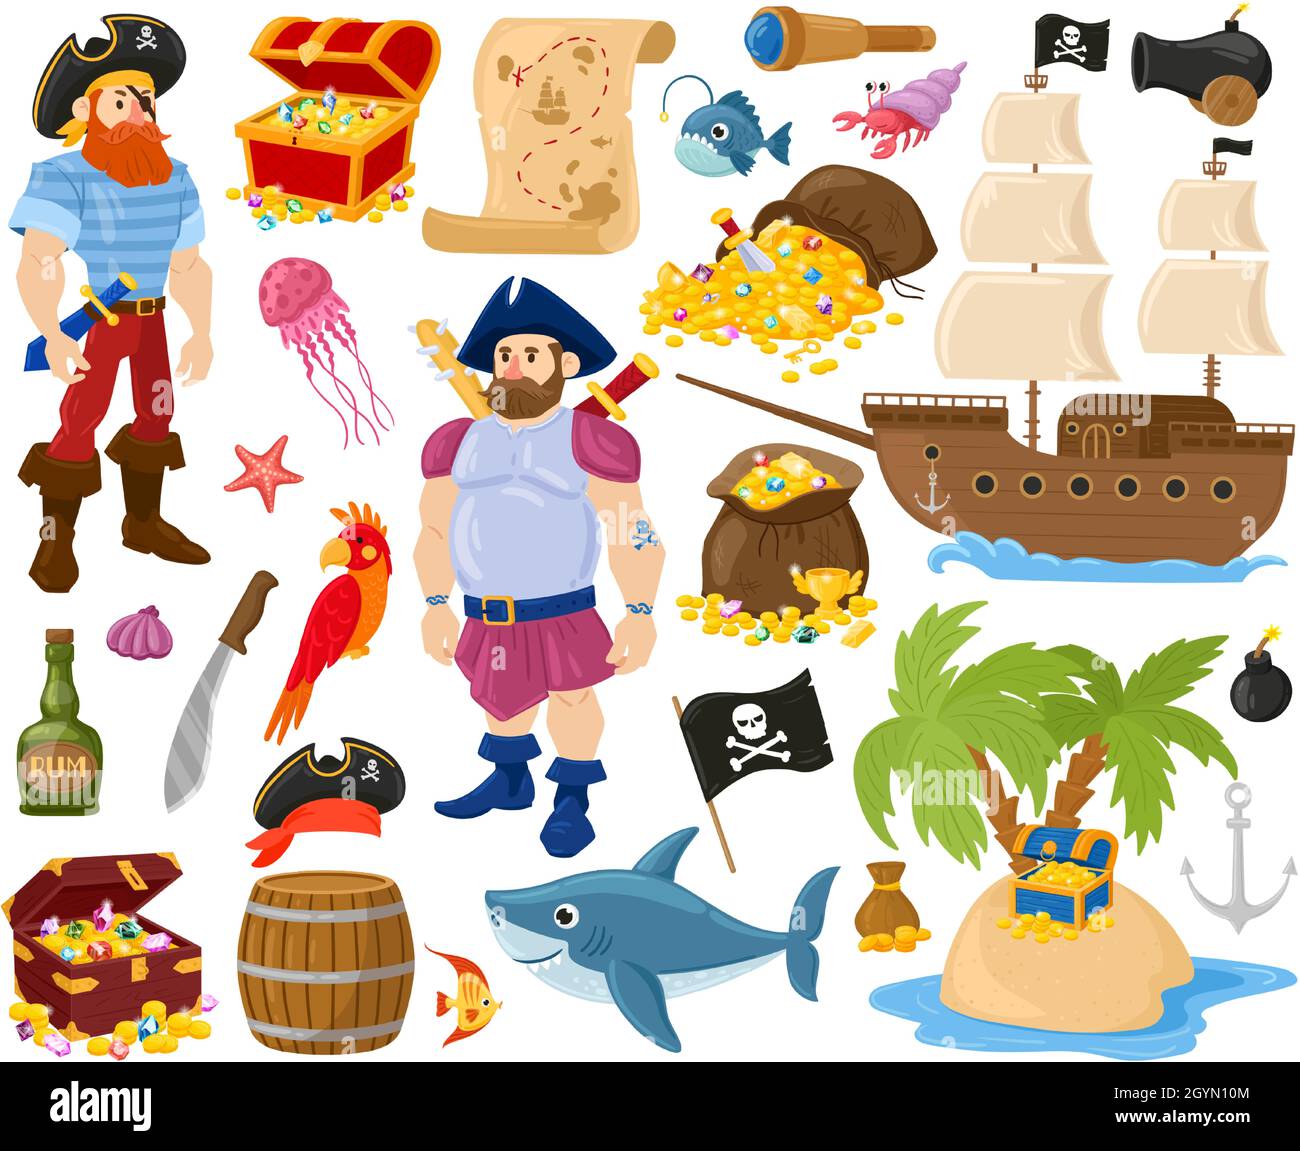 Cartoon Piraten, Seefische, Schatzkiste, Marineschiff. Pirate Seemann Zeichen, goldene Schatzschiff und Karte Vektor Illustration Set. Piratenmeer Stock Vektor